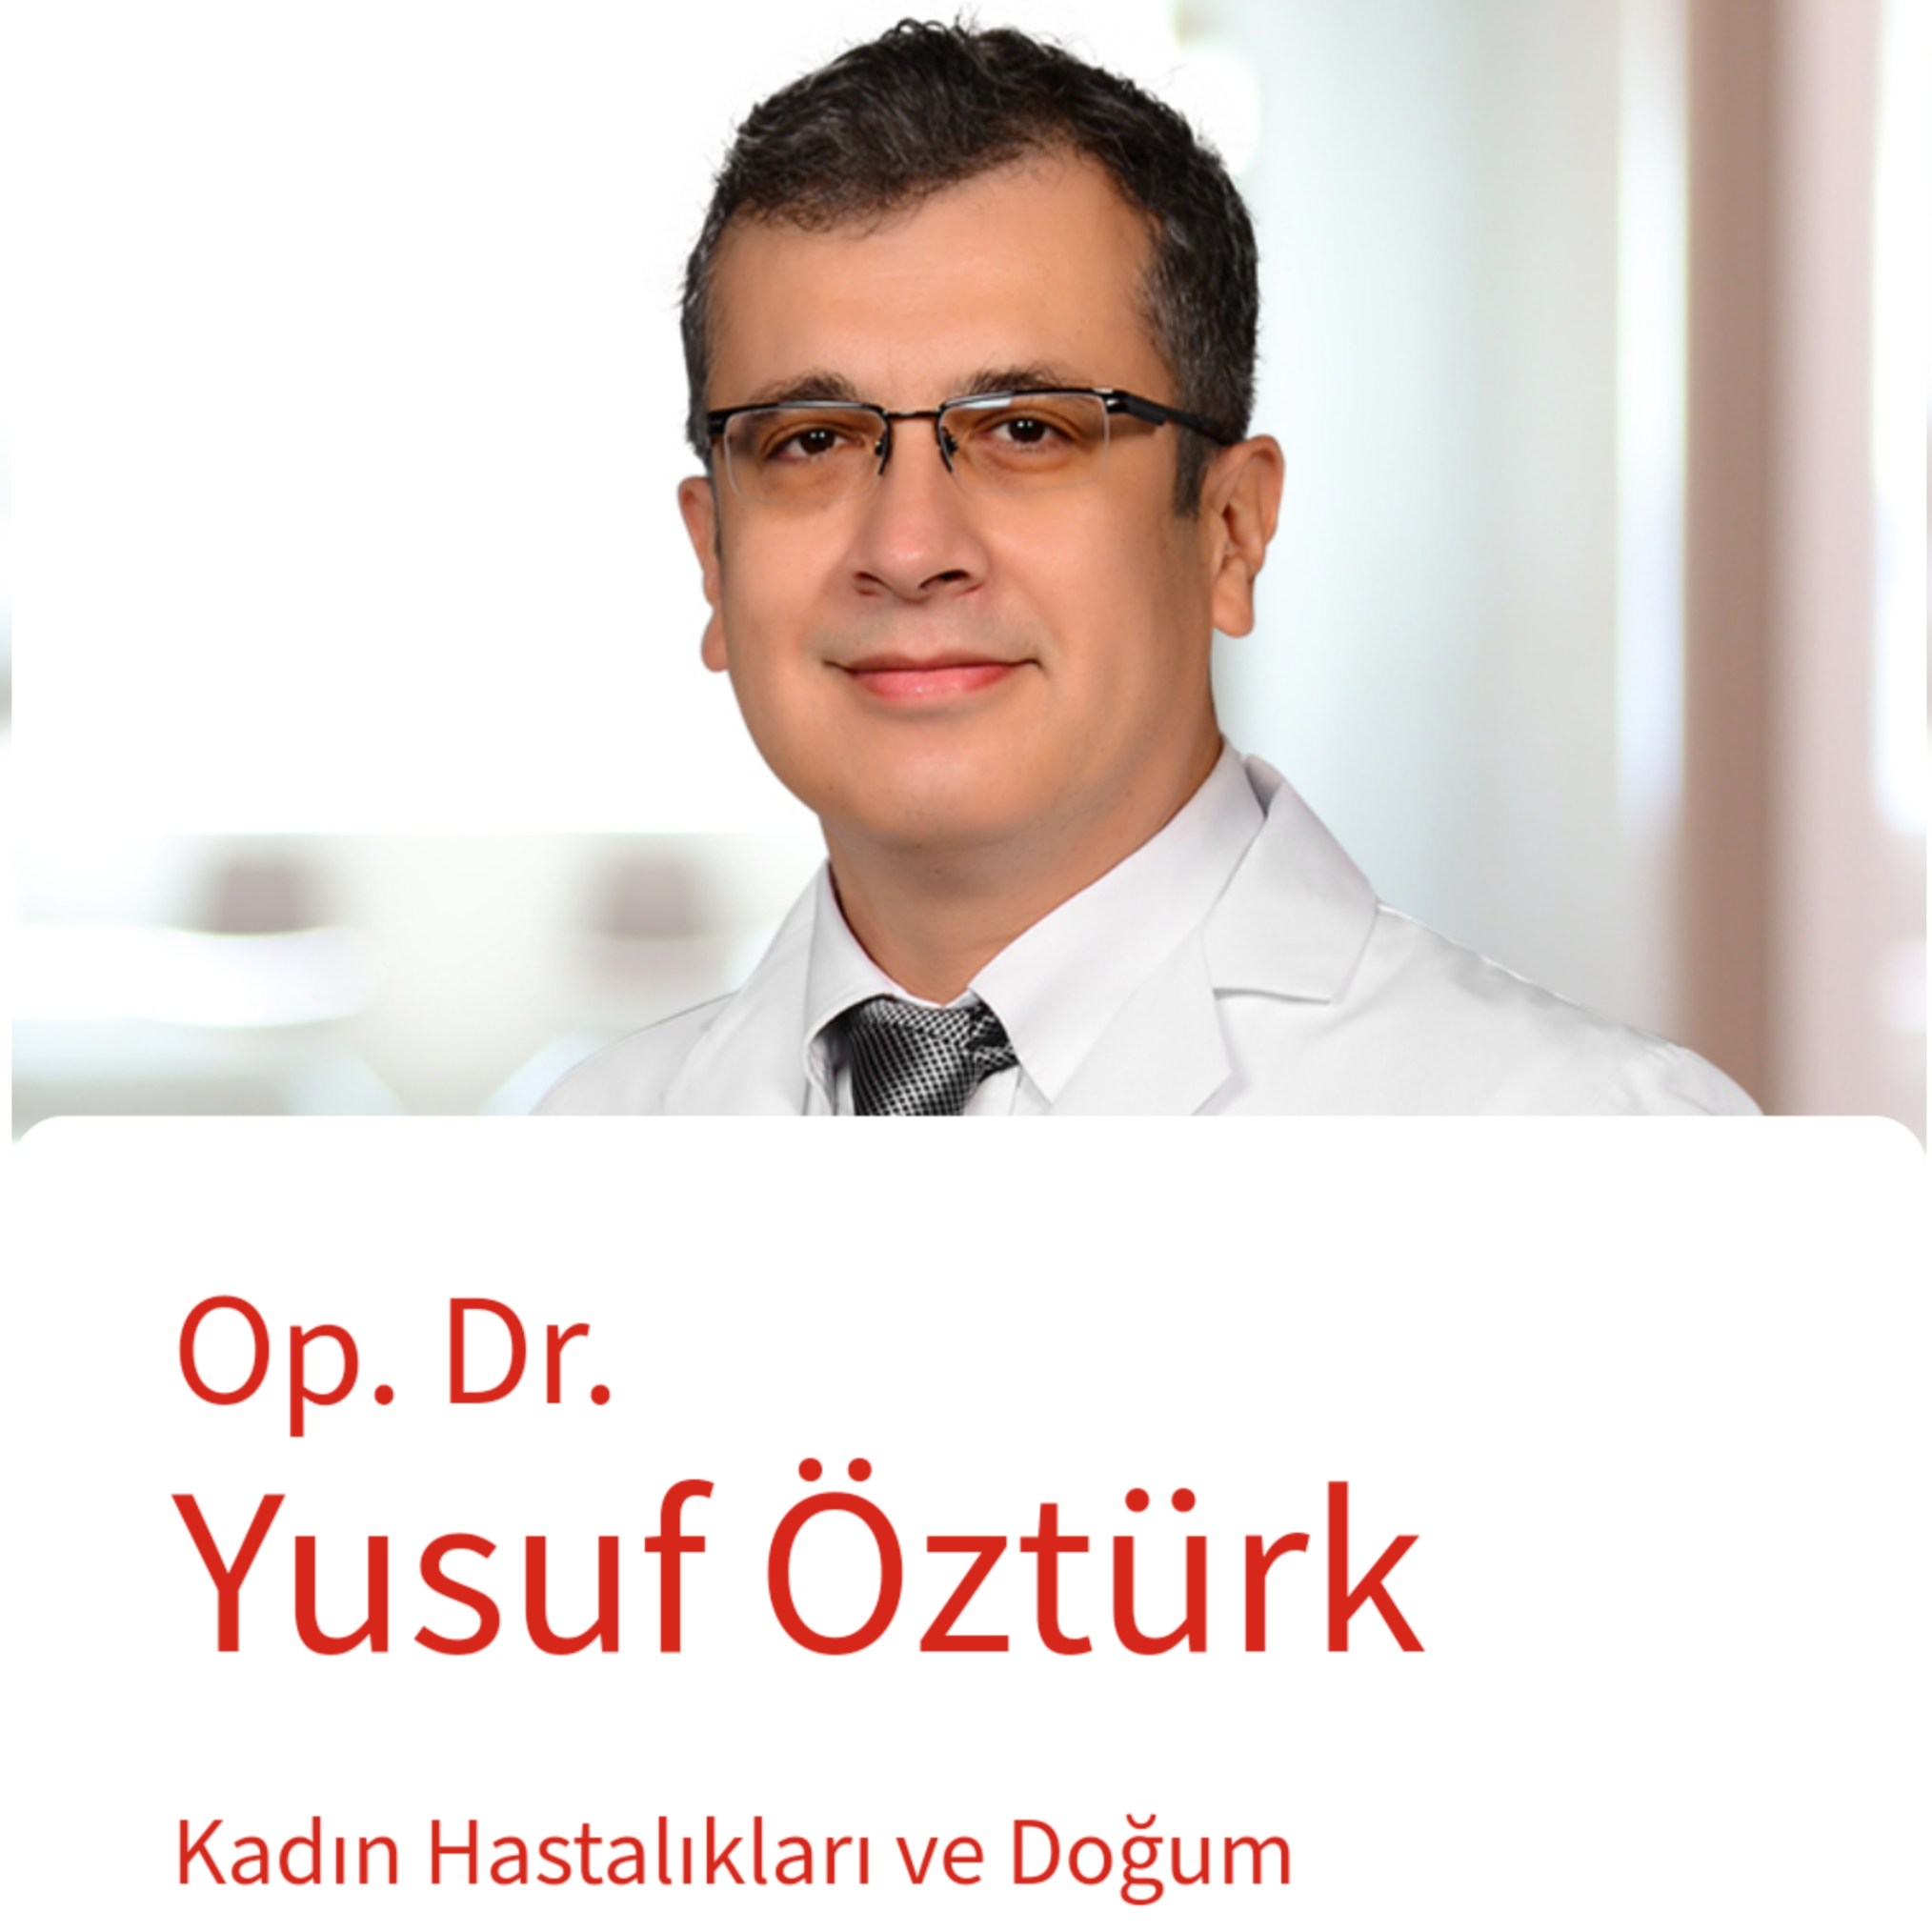 Op. Dr. Yusuf Öztürk